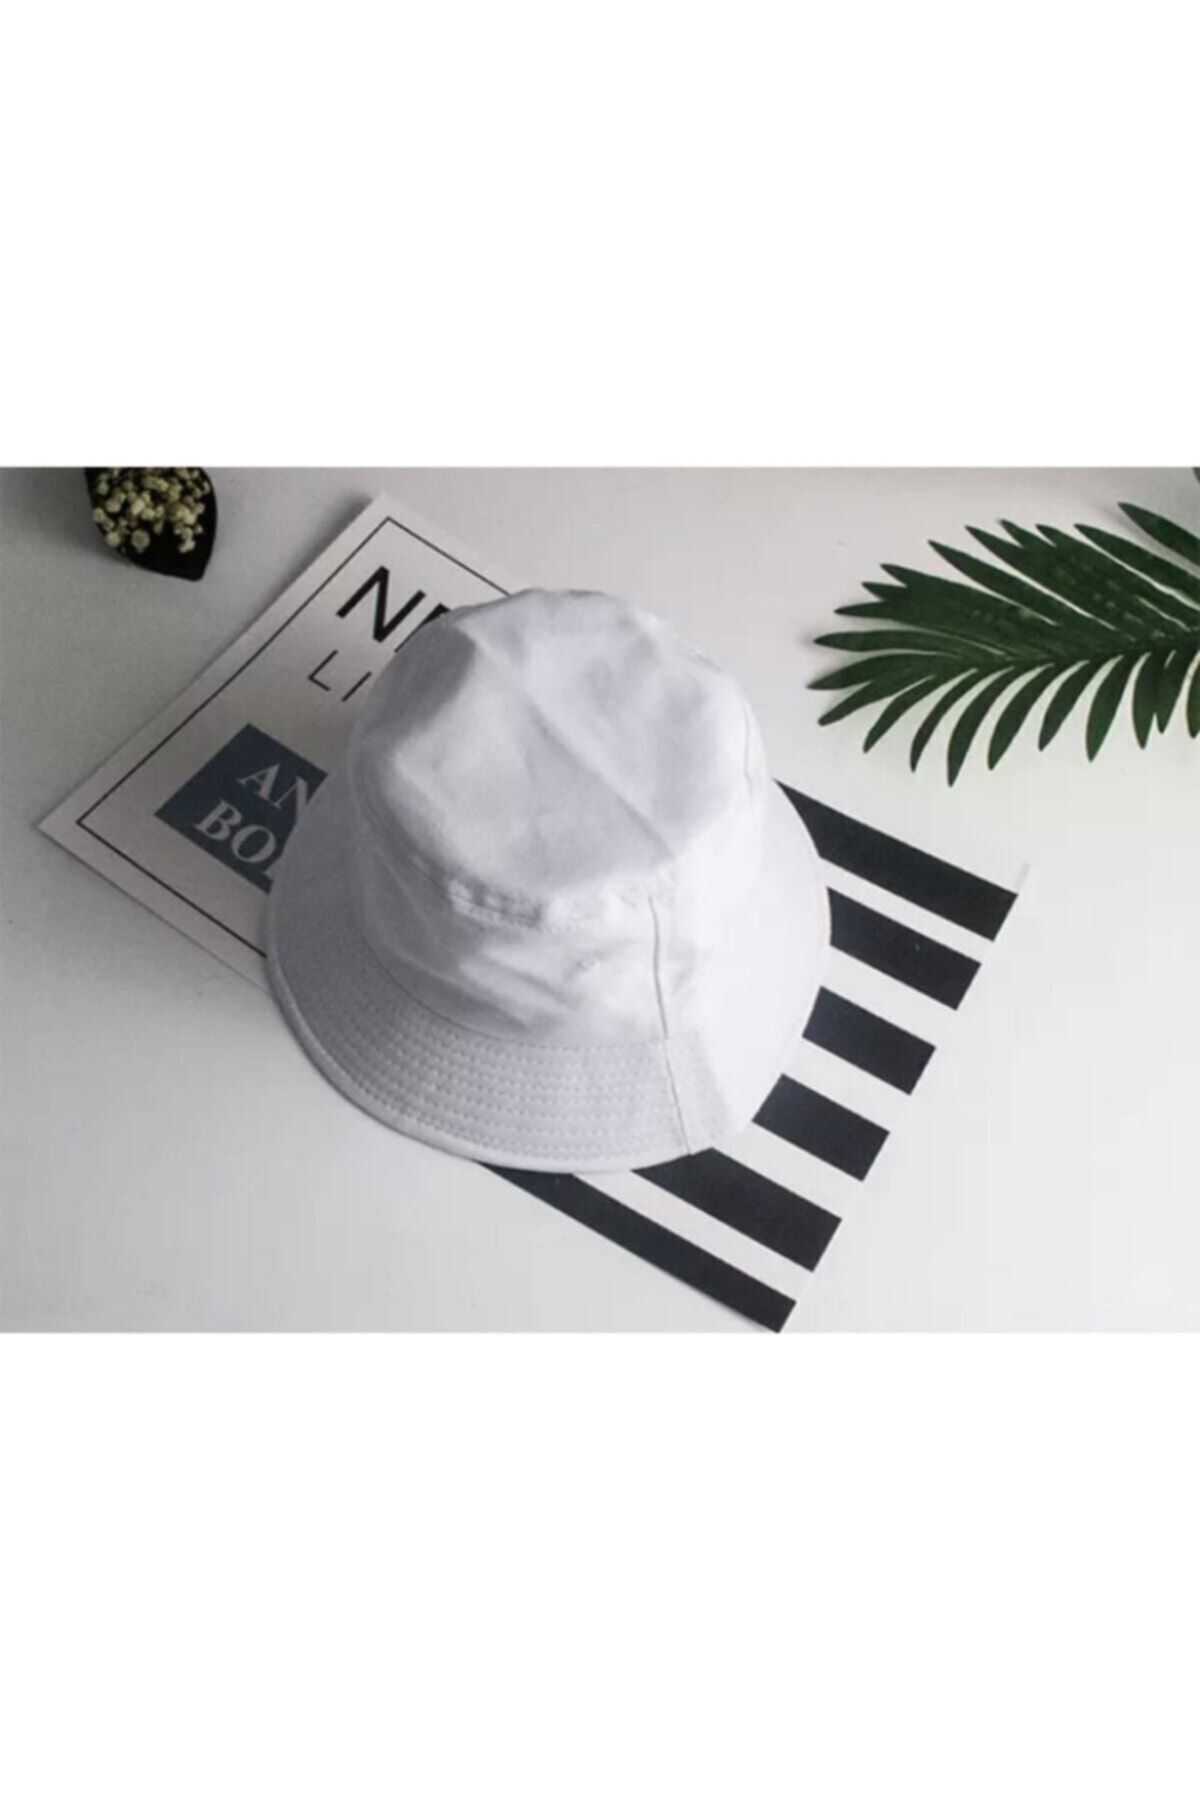 Düz Beyaz Kova Son Moda Şapka Balıkçı Şapka Bucket Hat